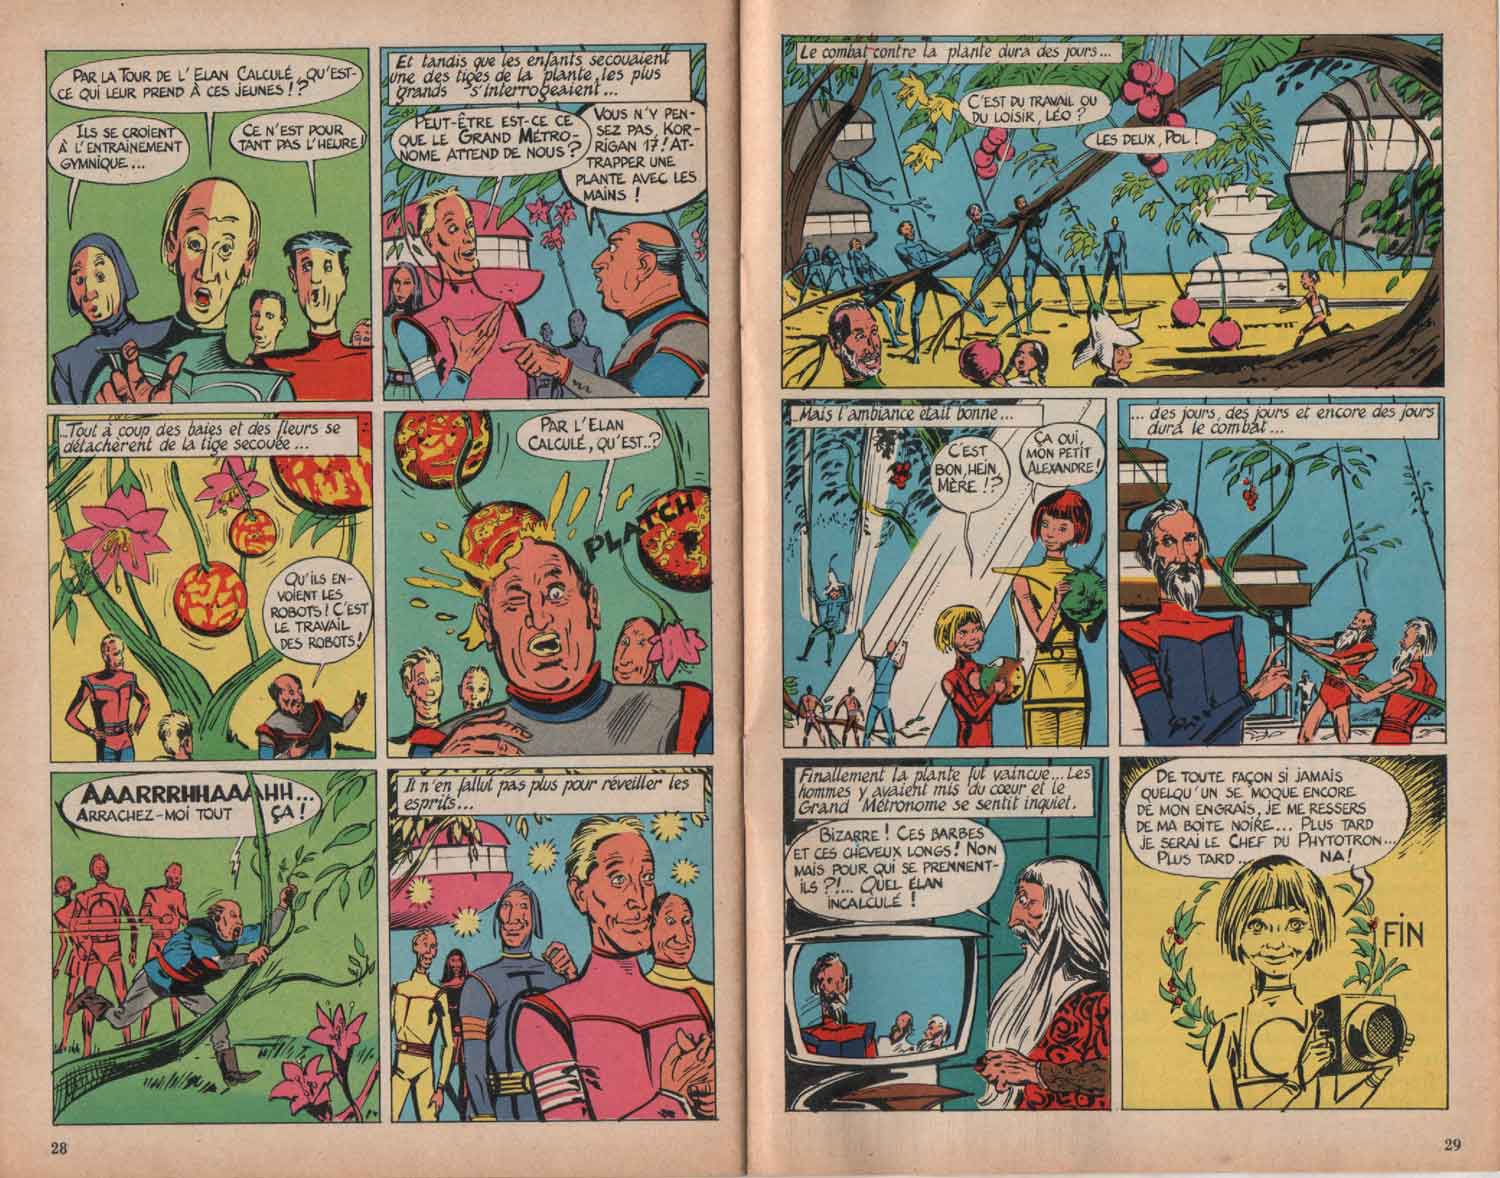 « Le Chef du Phytotron » Total journal n° 18 (11/1968);